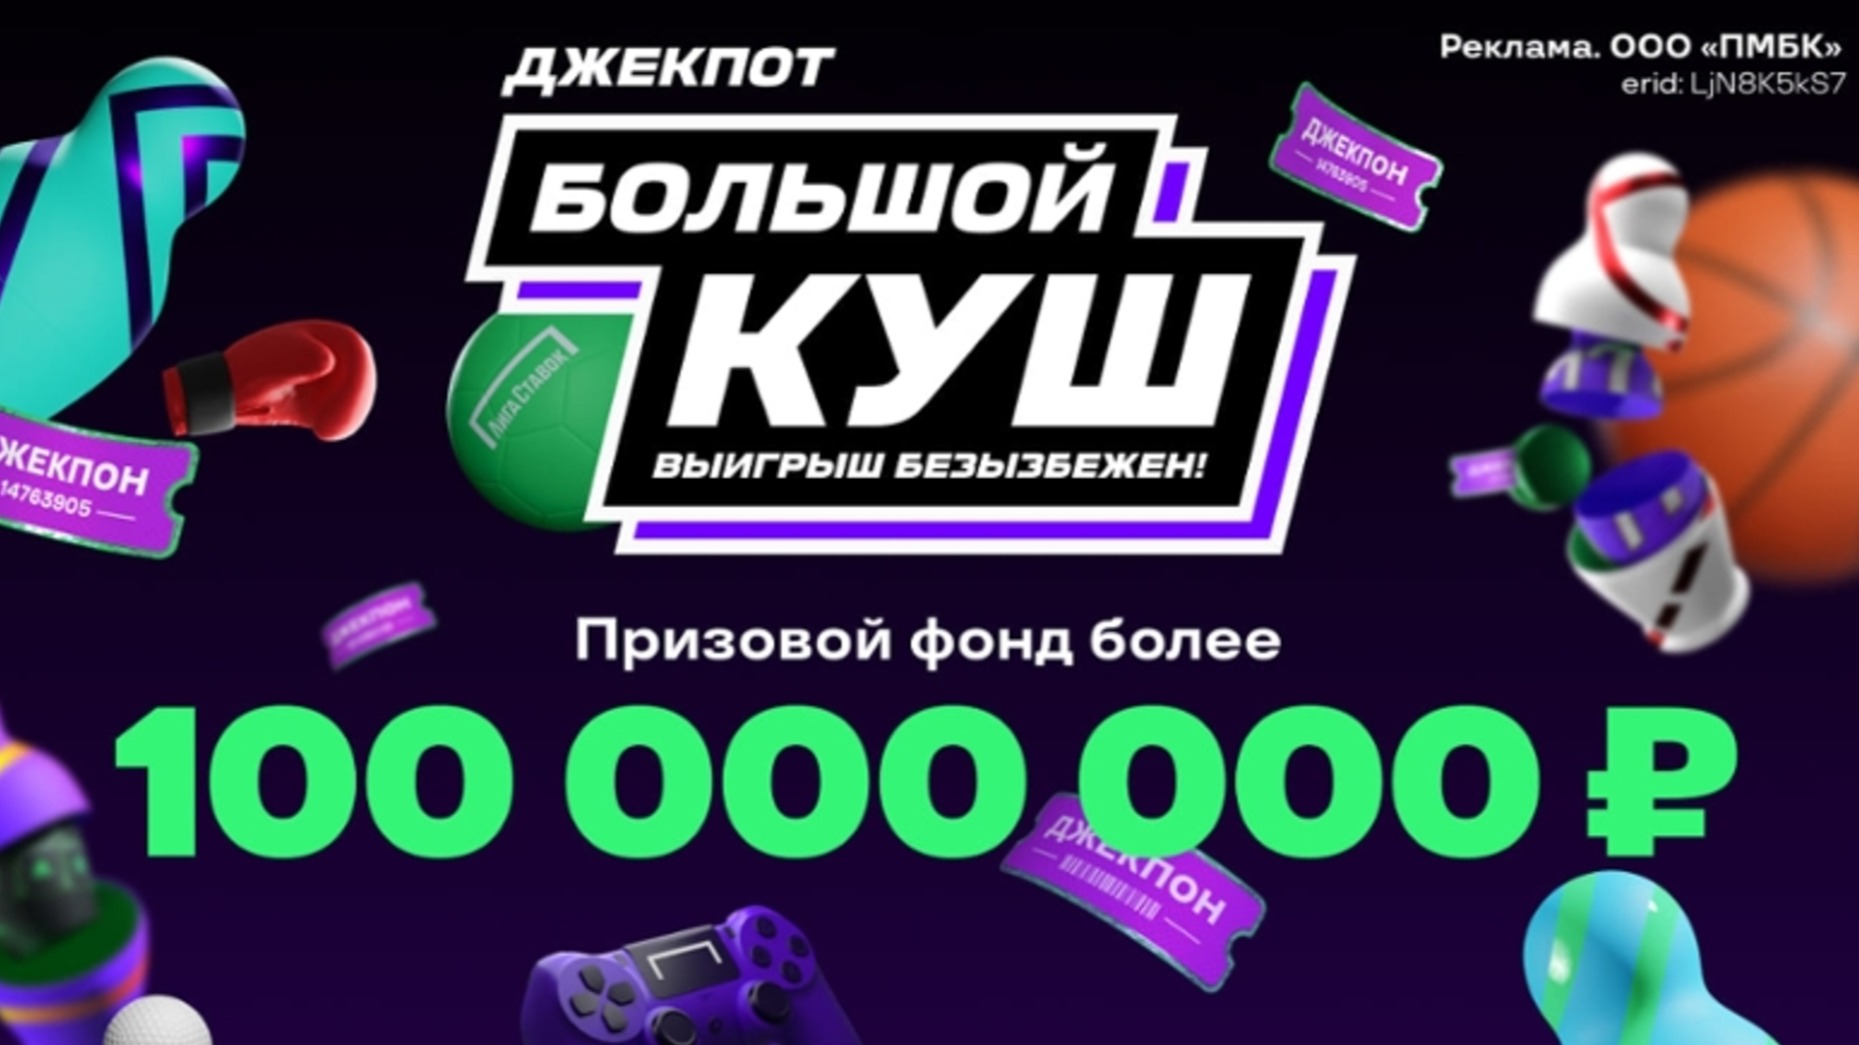 Лига Ставок разыгрывает призовой фонд в 100 миллионов рублей